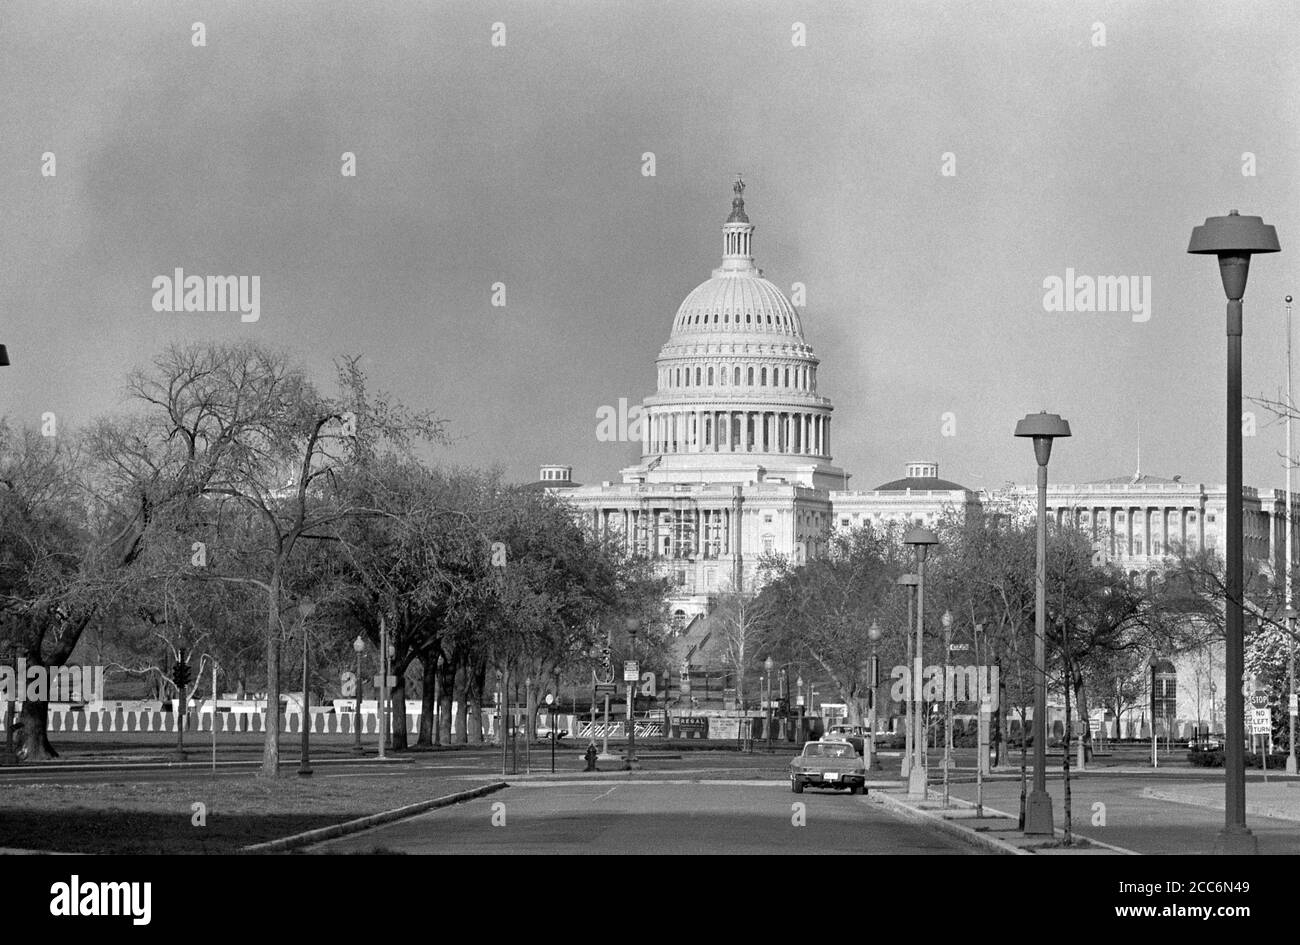 Fumée s'élevant près du Capitole des États-Unis pendant les émeutes après l'assassinat du Dr Martin Luther King Jr, Washington, D.C., États-Unis, Marion S. Triosko, 6 avril 1968 Banque D'Images